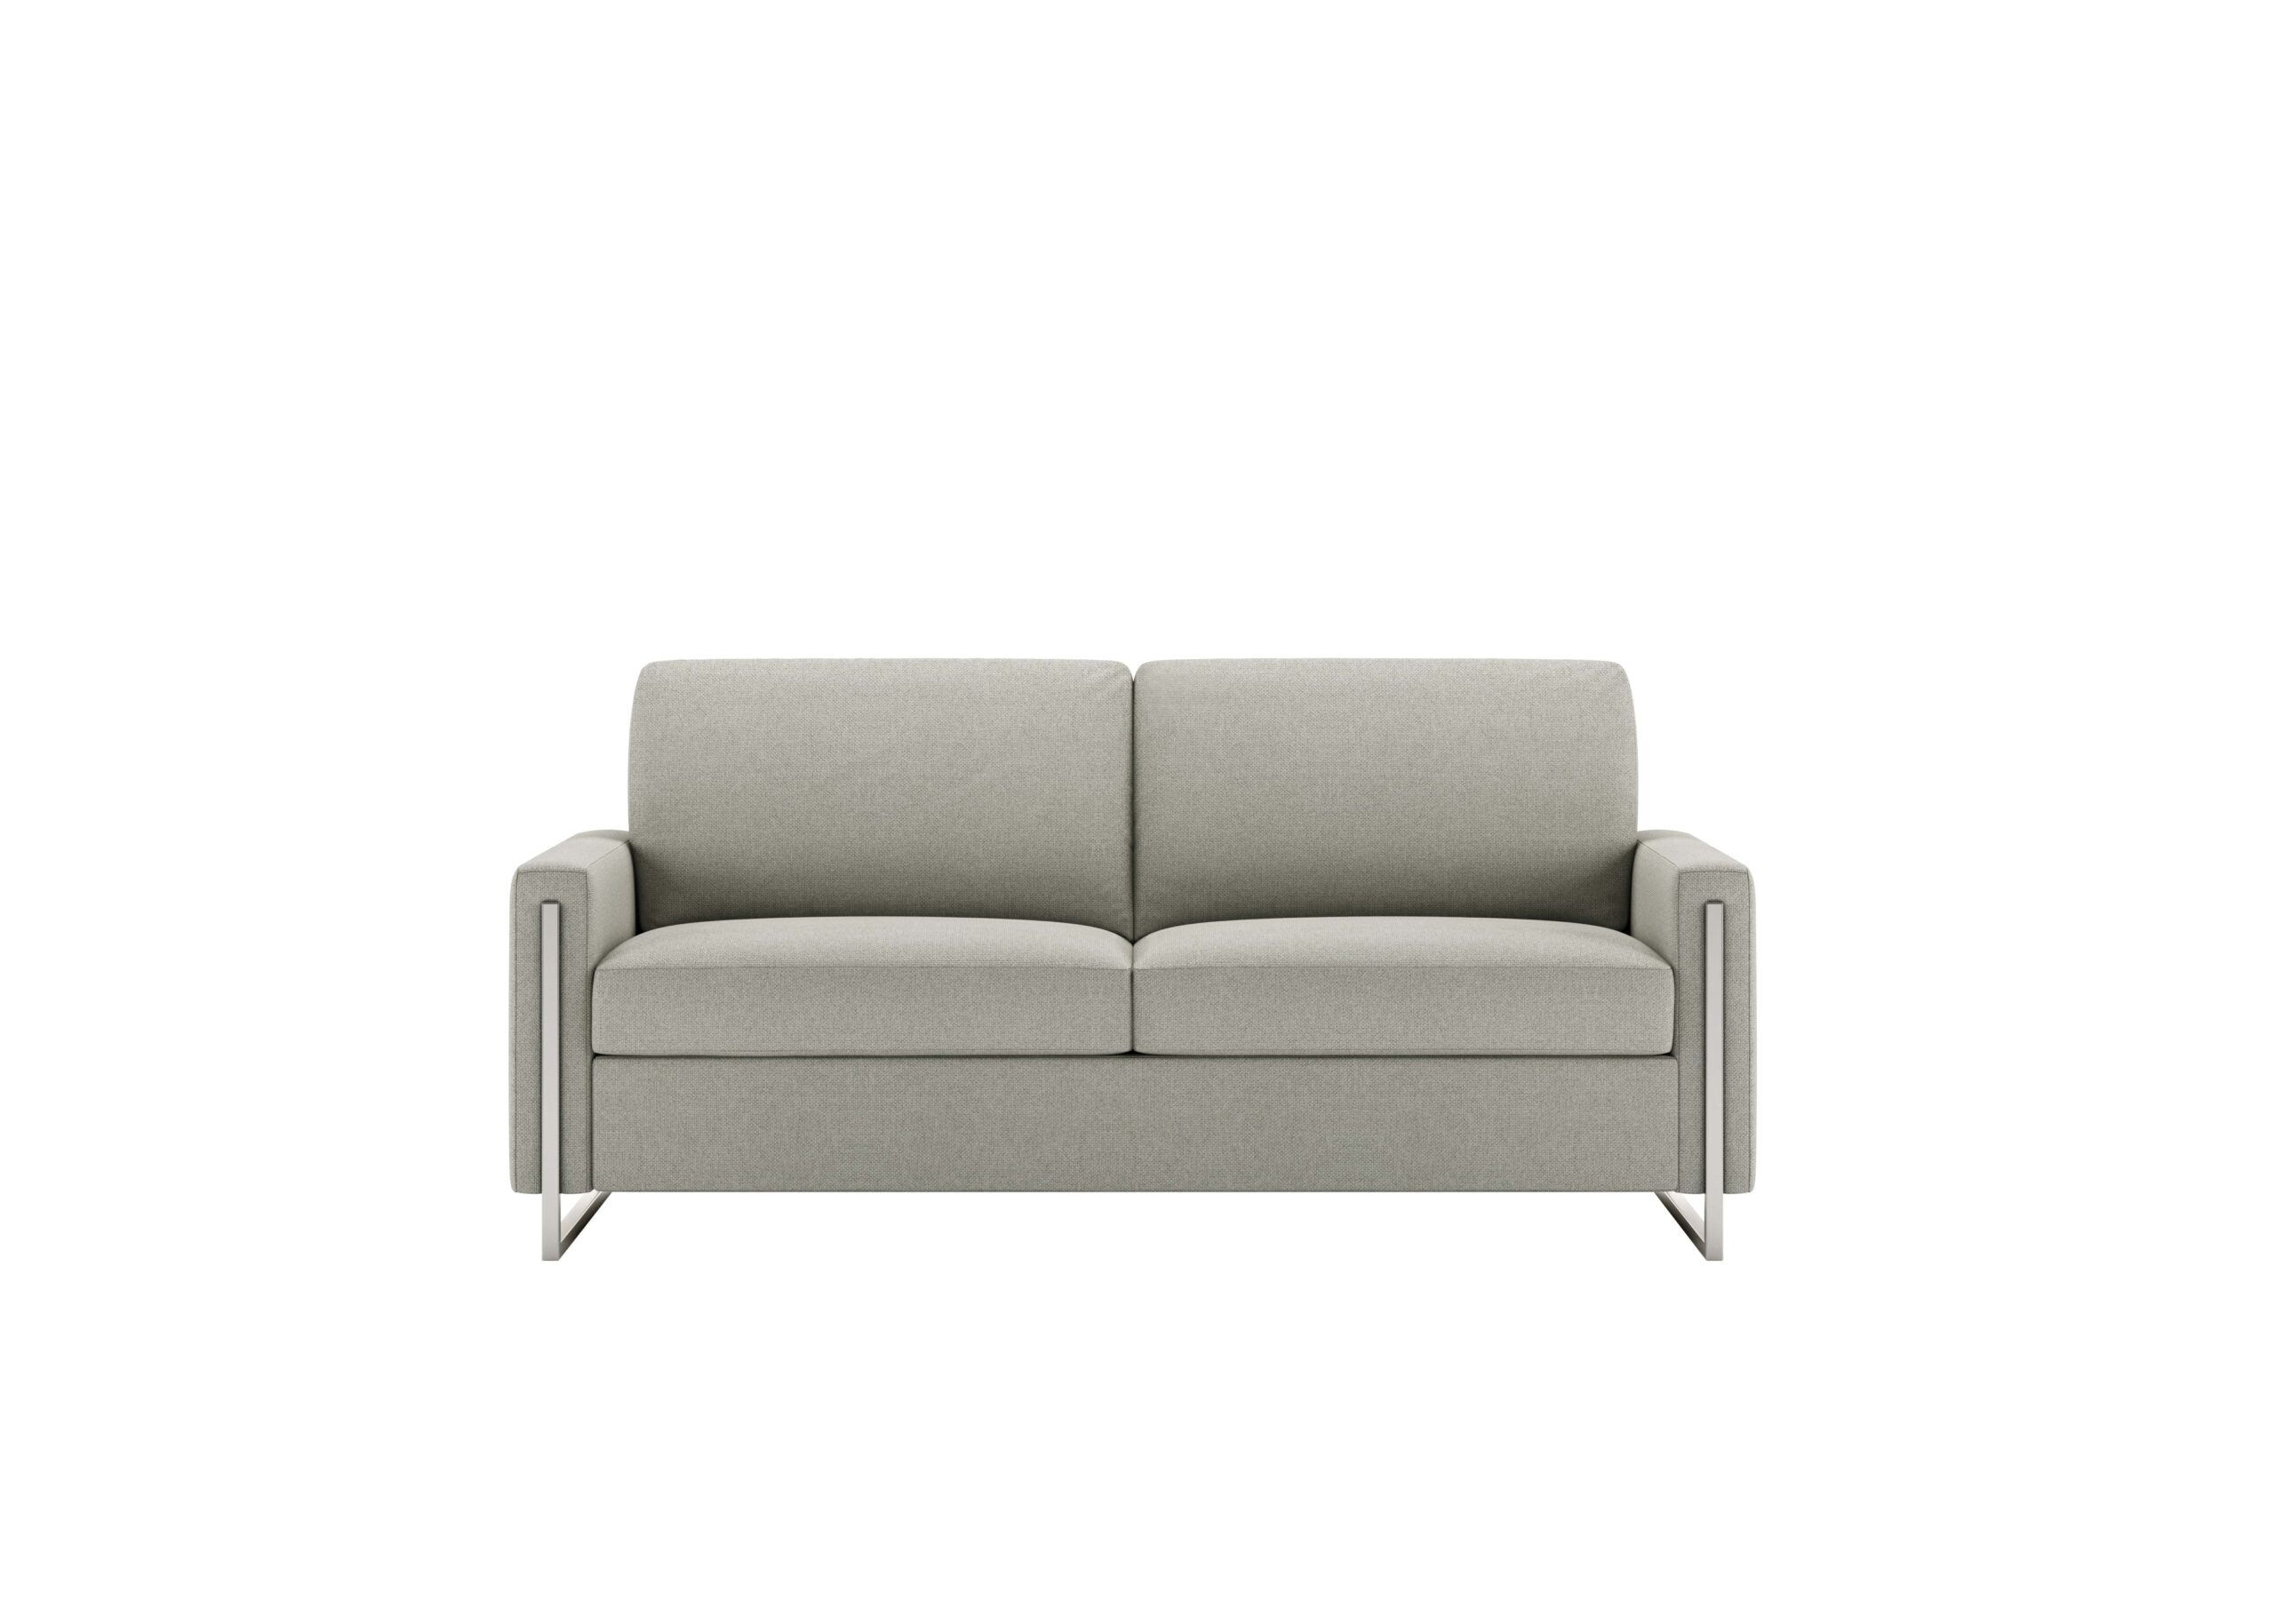 Sulley white sofa